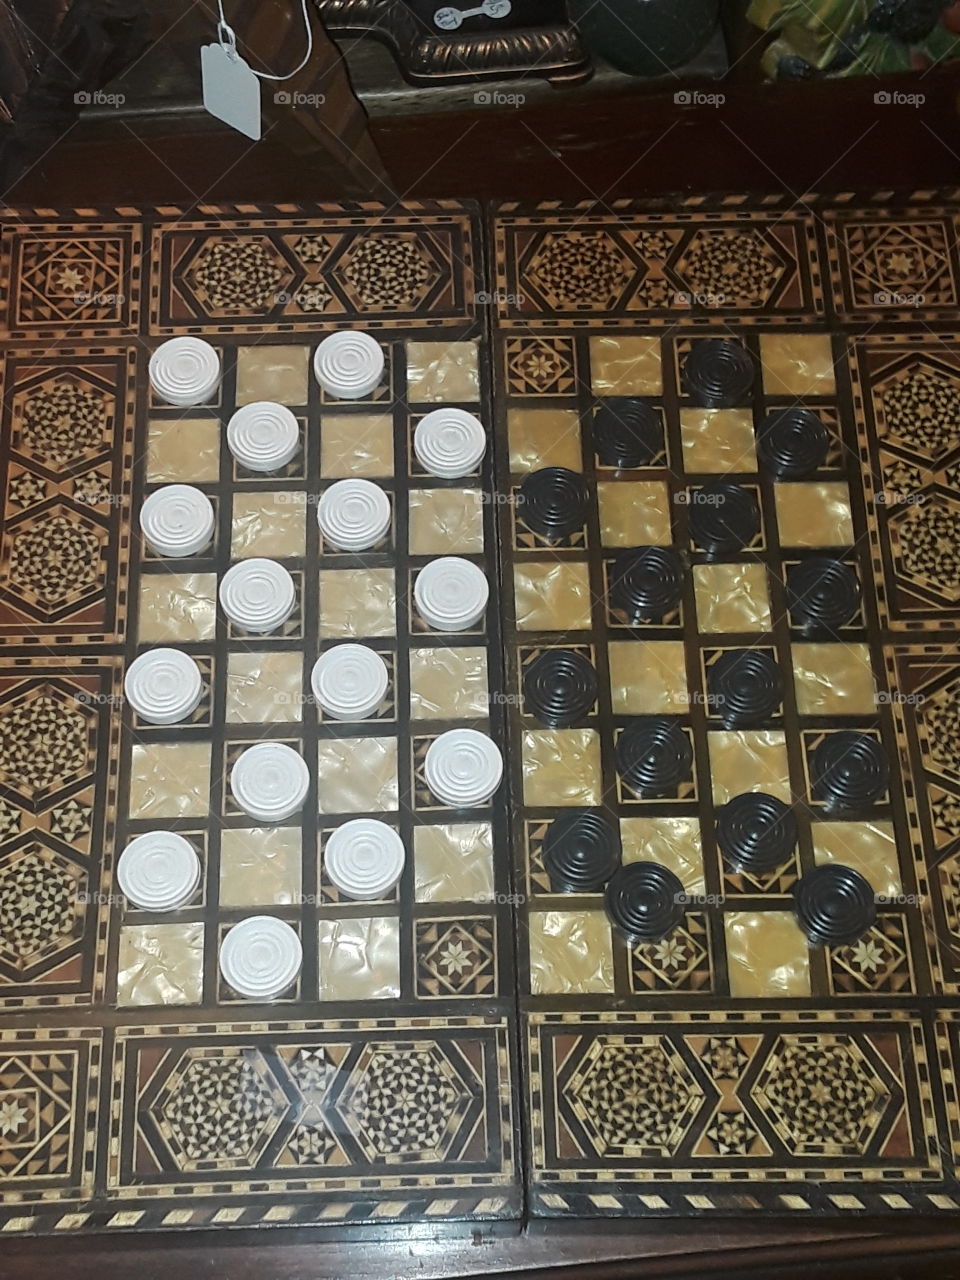 Antique Checkers board